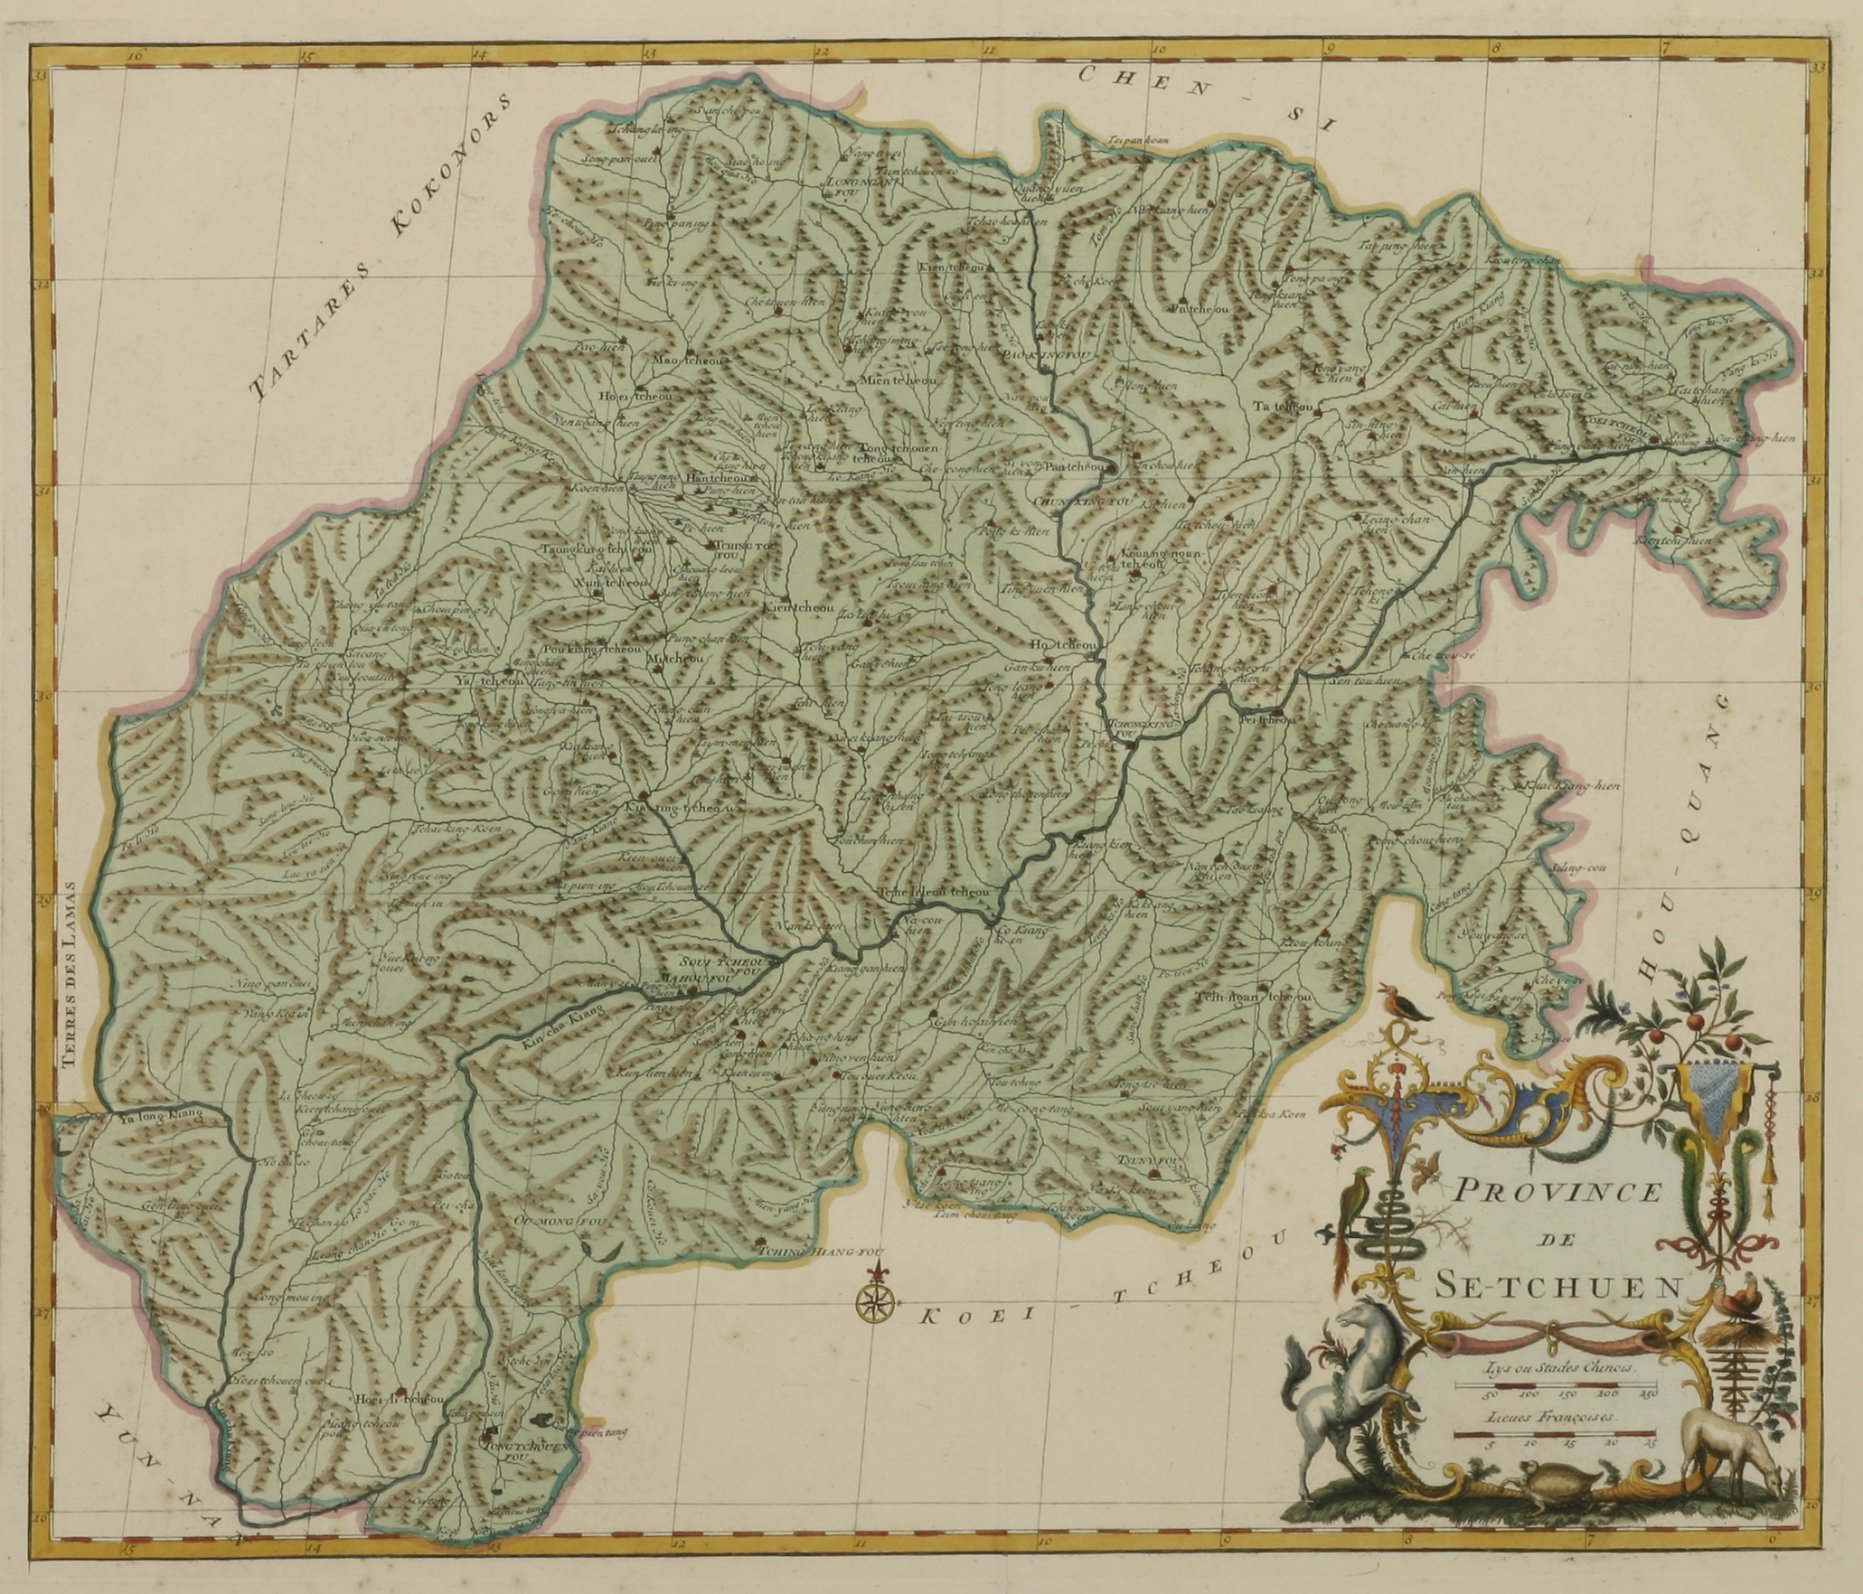 Province de Se-Tchuen - Antique Print from 1737